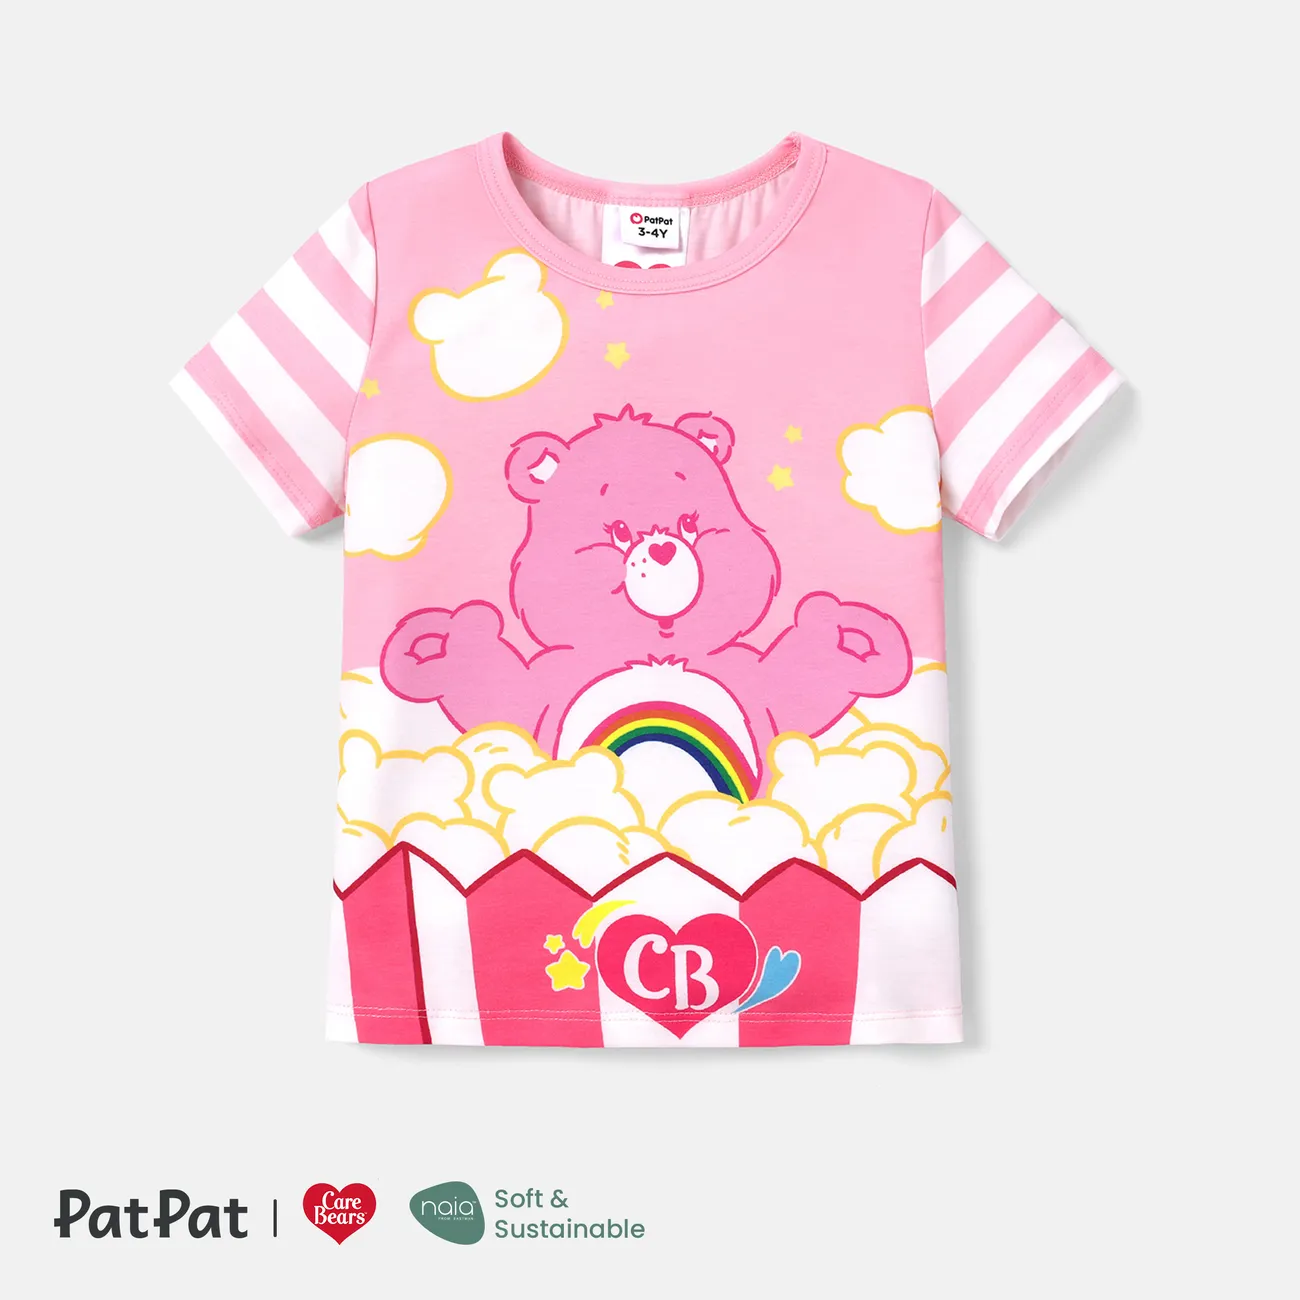 Gli Orsetti del Cuore Bambino piccolo Unisex Infantile Orso Manica corta Maglietta Rosa big image 1